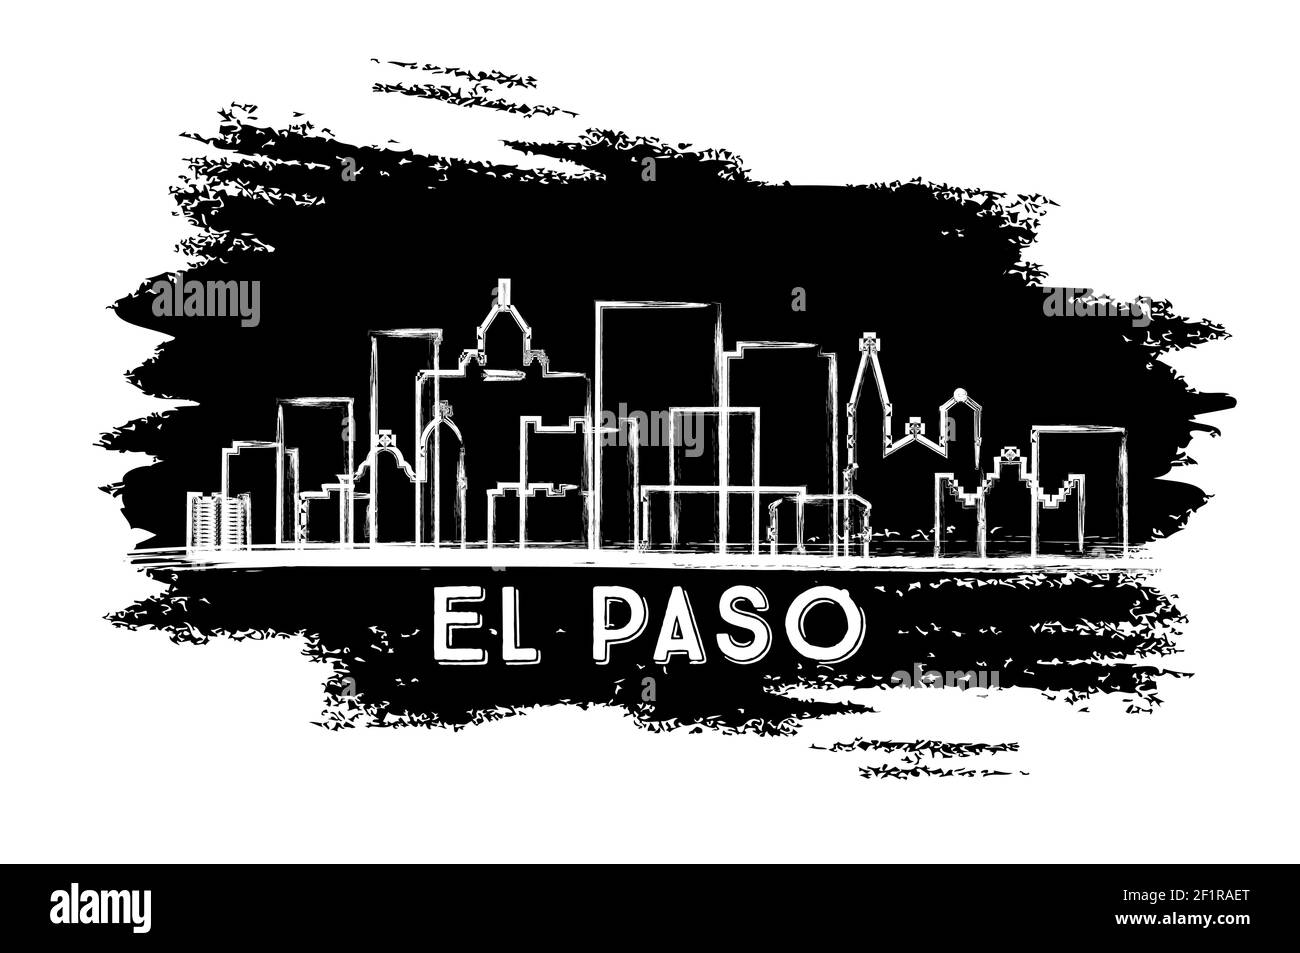 El Paso Texas USA Skyline Silhouette. Esquisse dessinée à la main. Concept de voyage d'affaires et de tourisme avec architecture historique. Illustration vectorielle. Illustration de Vecteur